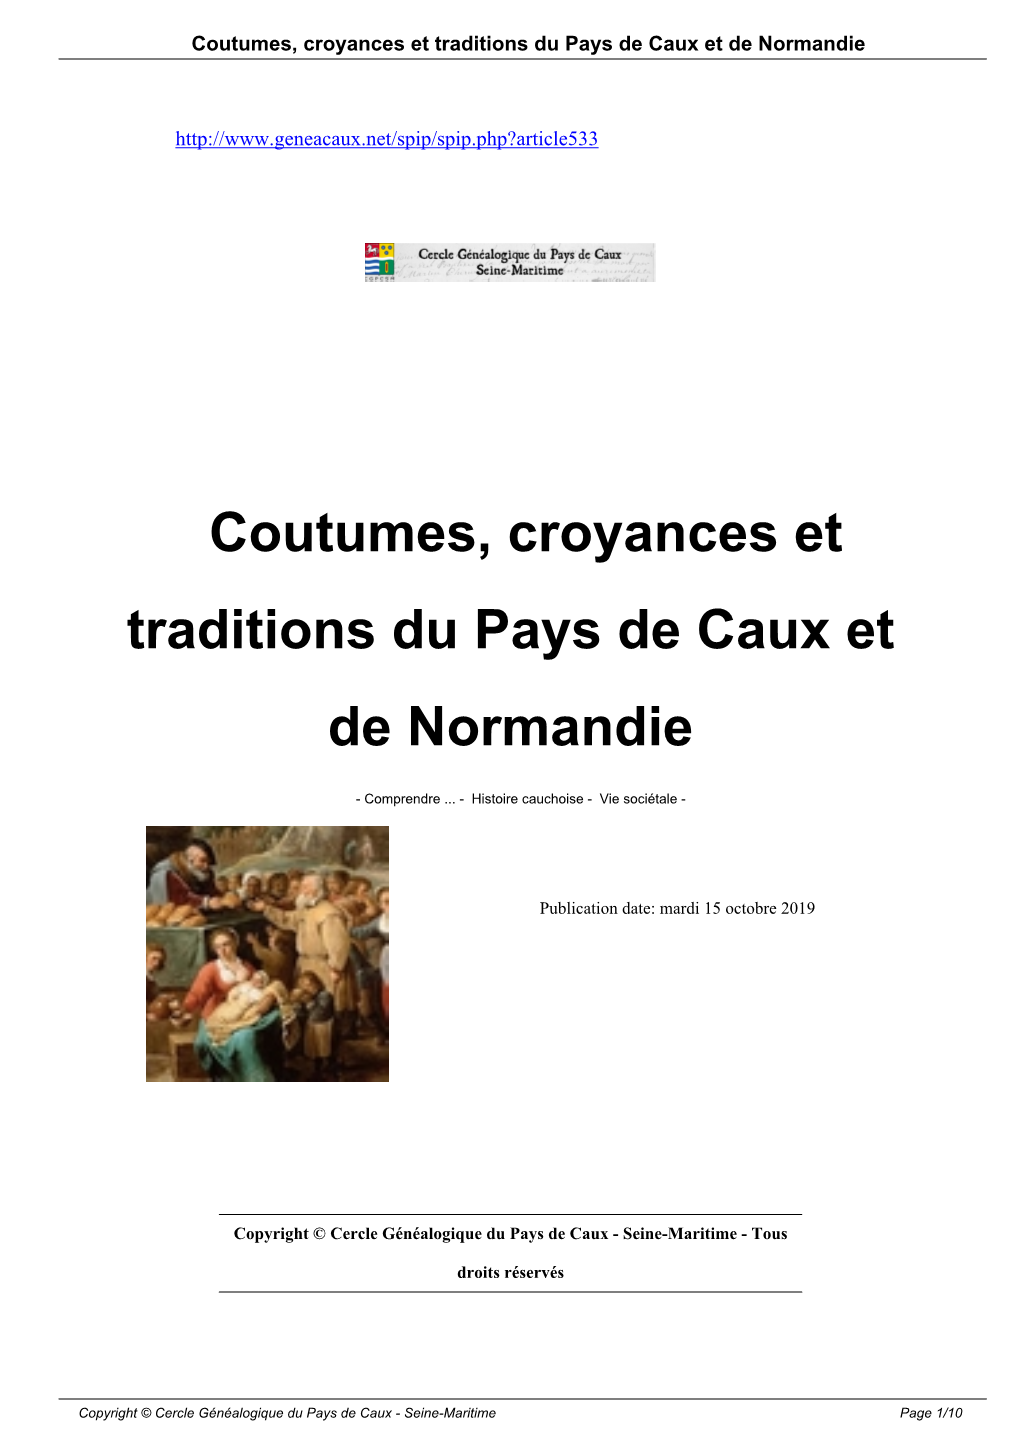 Coutumes, Croyances Et Traditions Du Pays De Caux Et De Normandie